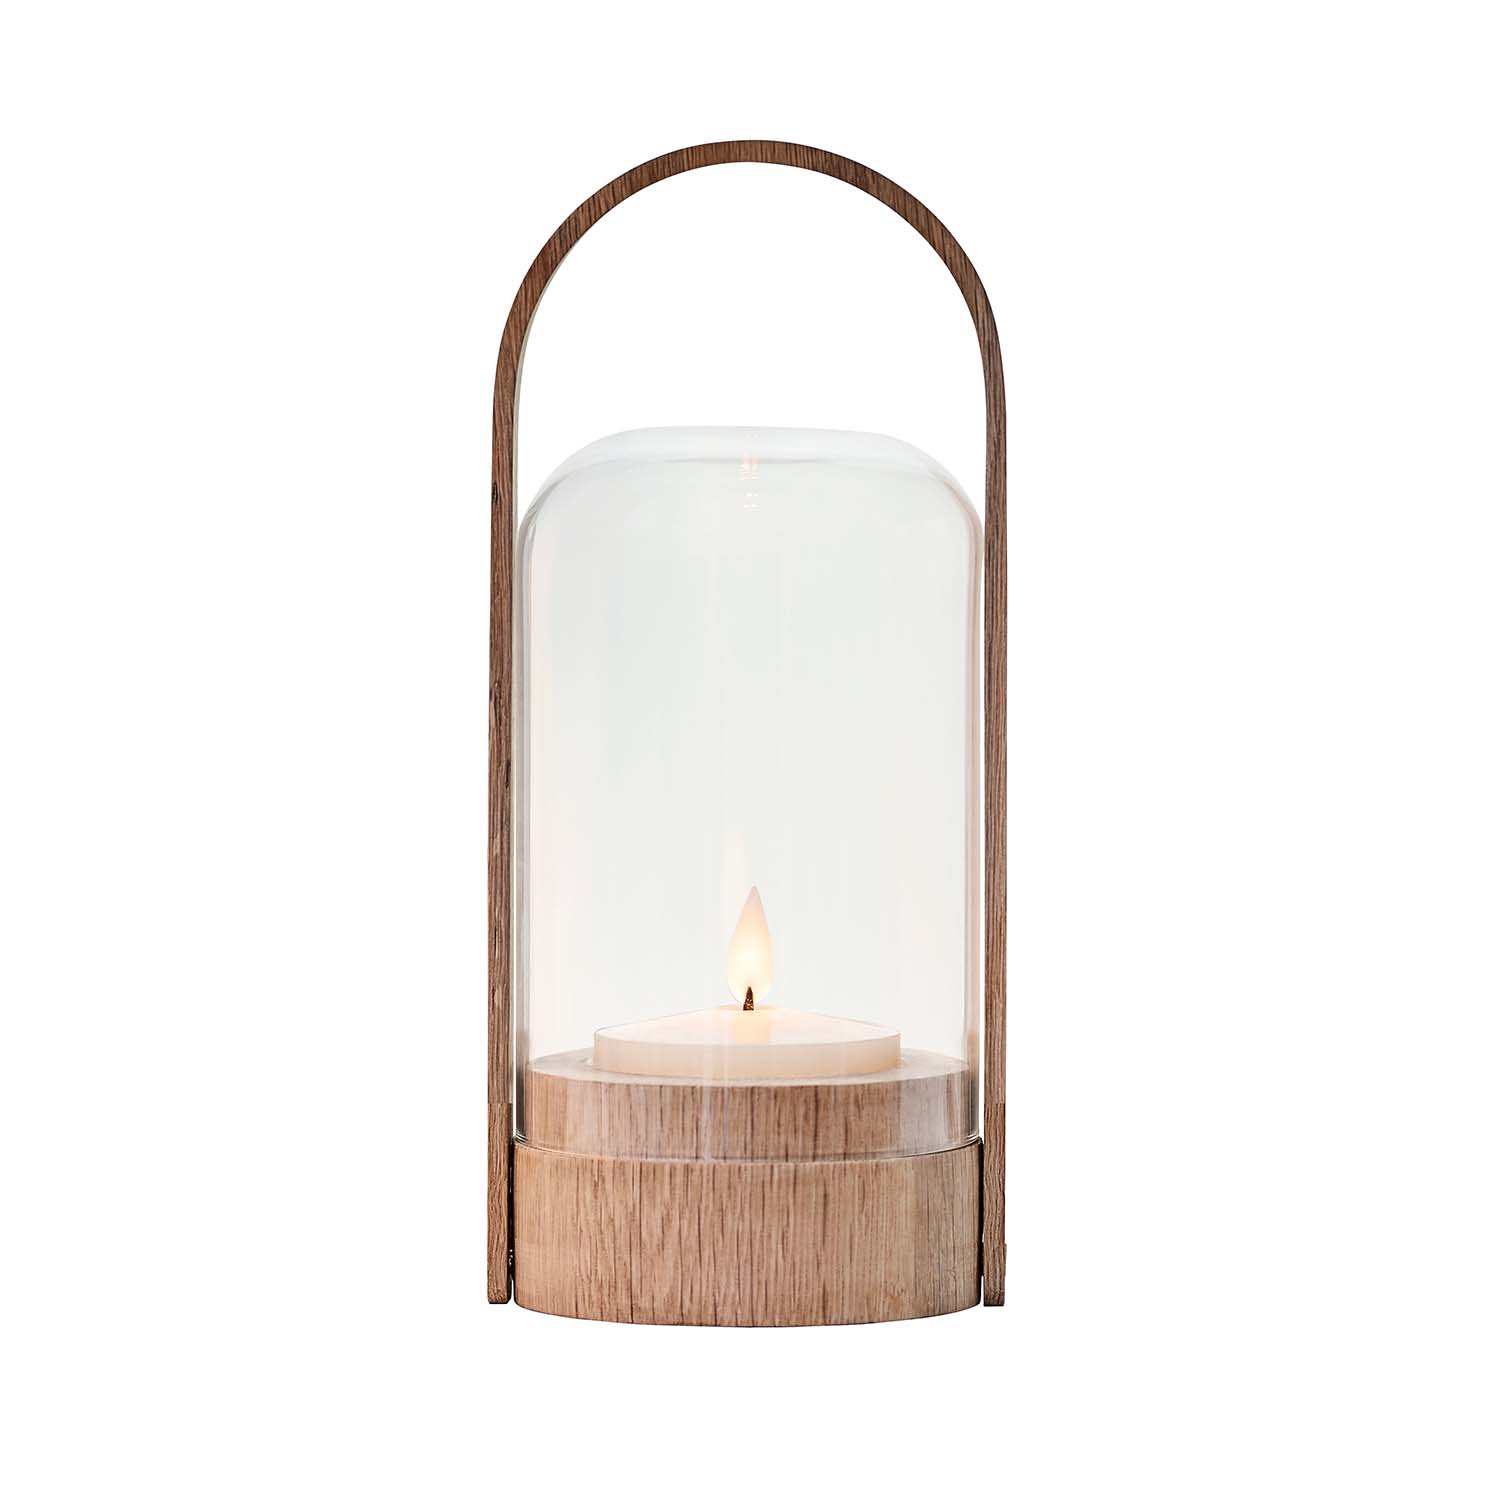 KERZENLICHT – Kerzenlampe aus Holz und Glas mit Griff, wiederaufladbar